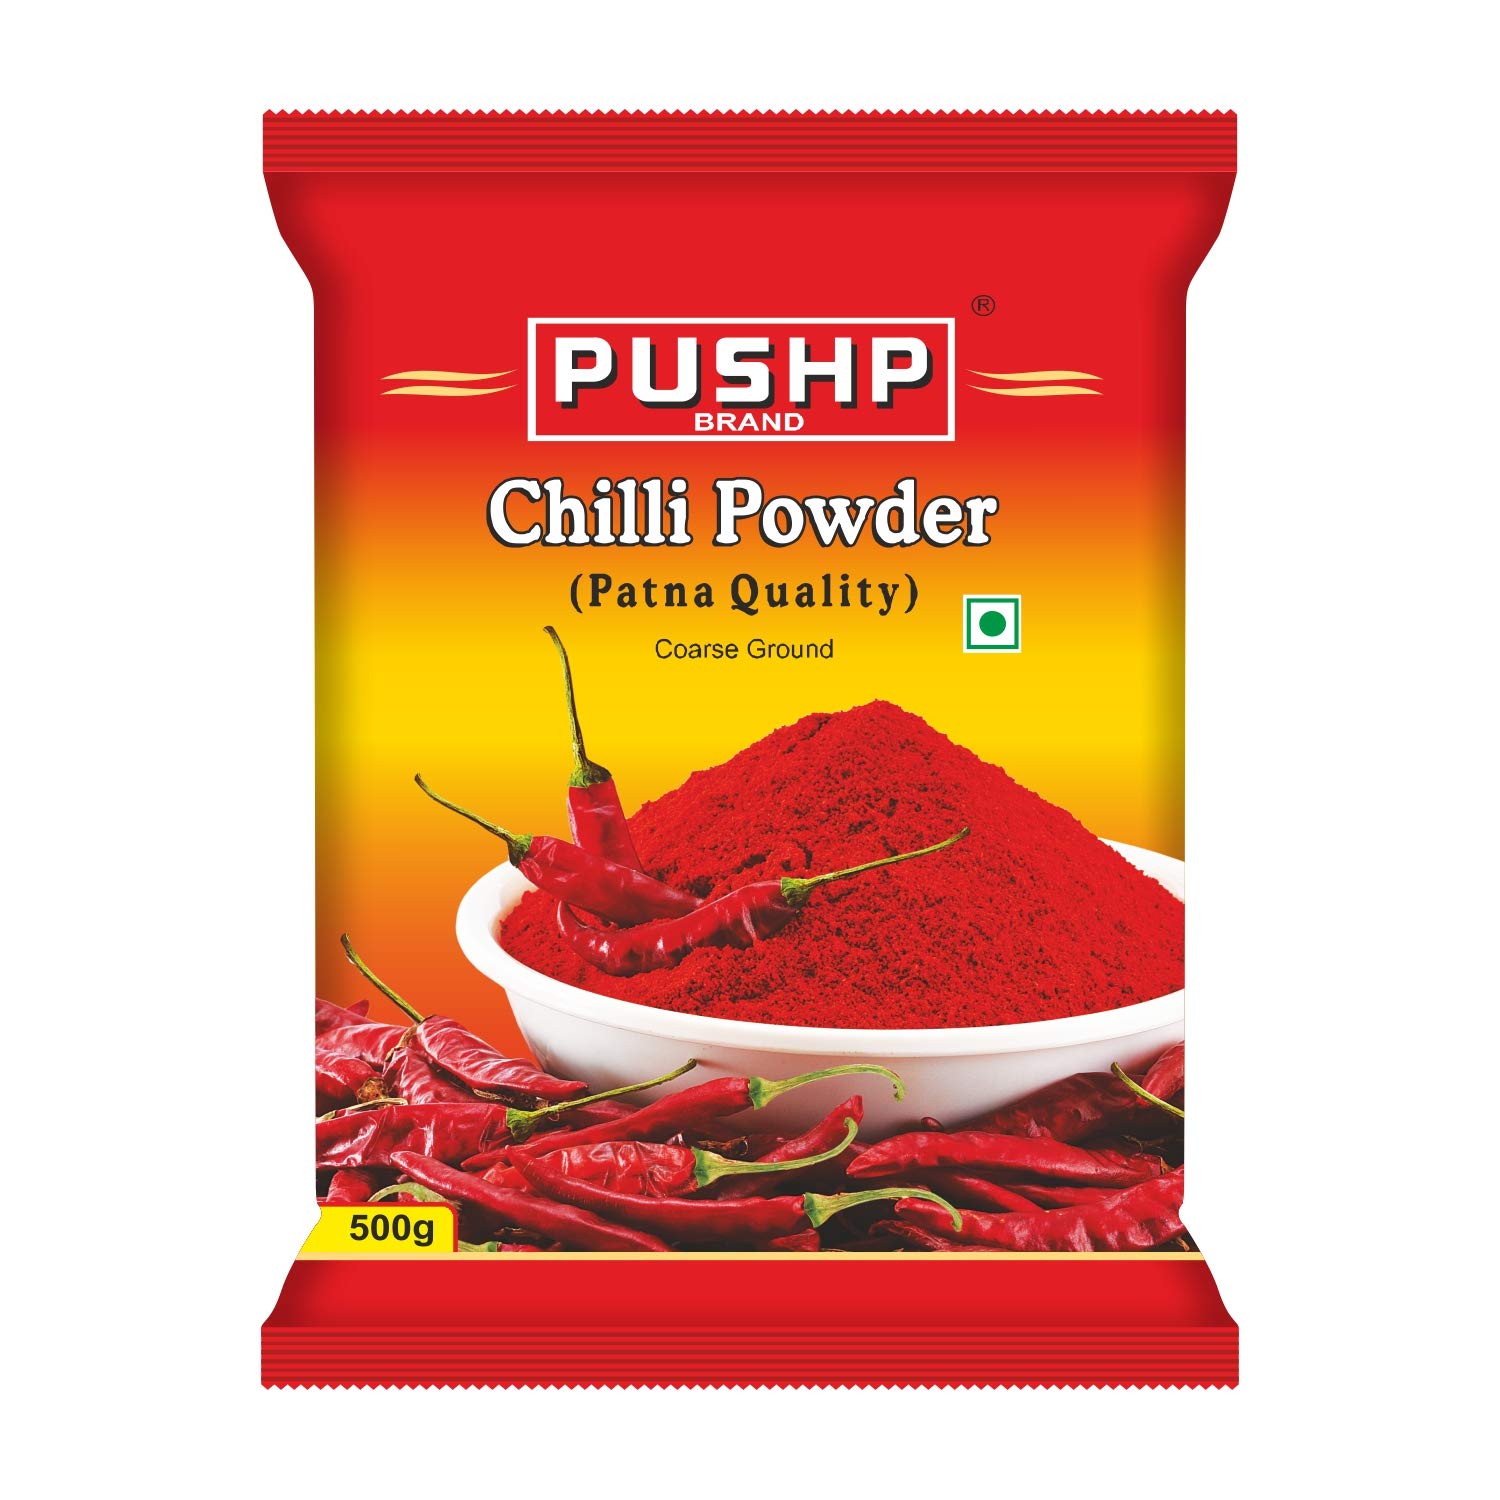 Pushp Chilli Powder (500g) - Neutral Spicy Red Chilli Powder